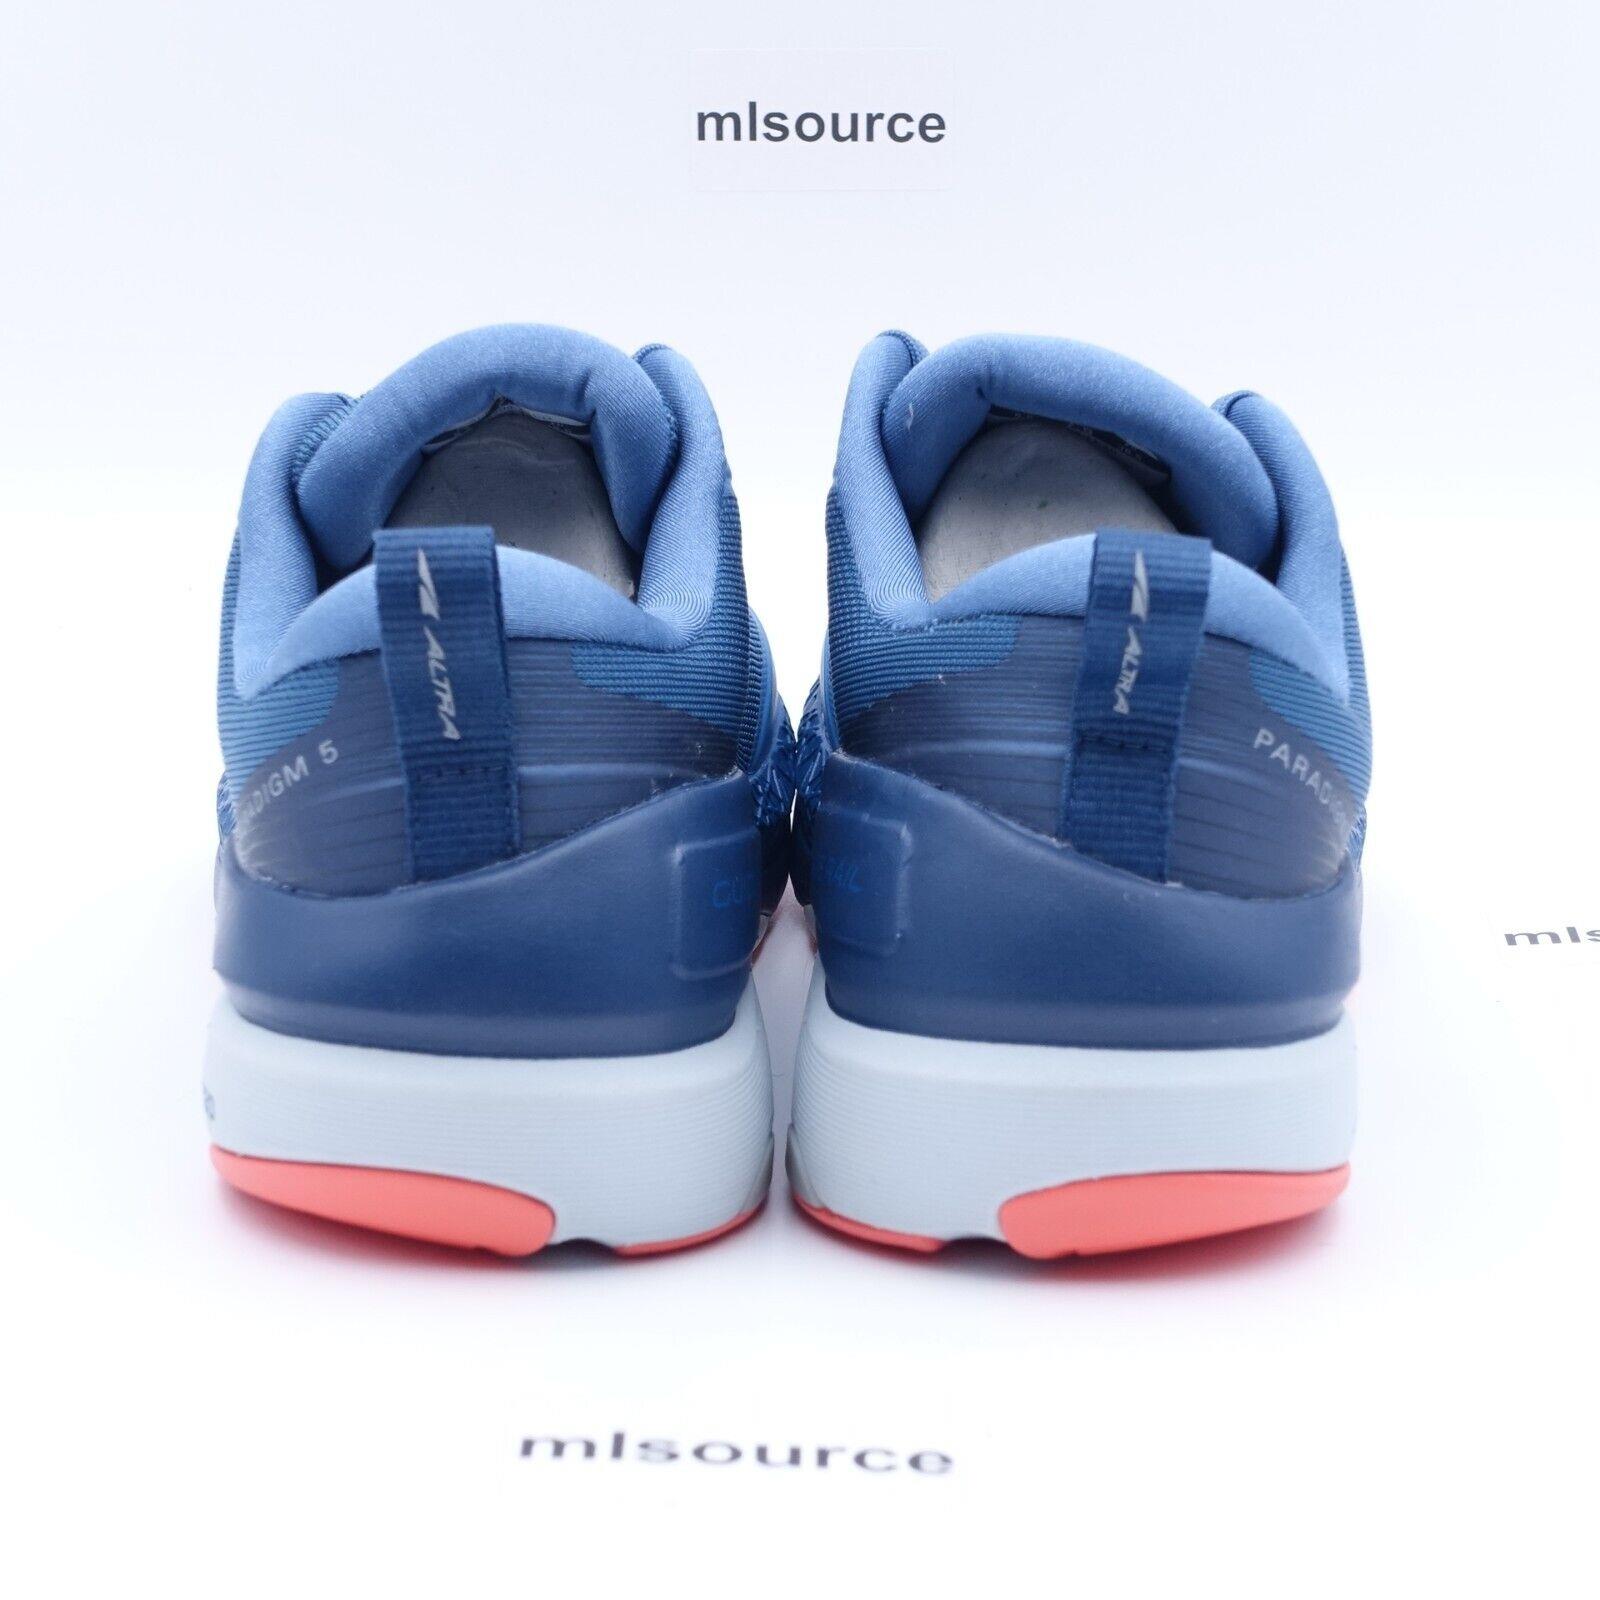 Altra shoes Paradigm - Blue , Blue/Coral Manufacturer 2